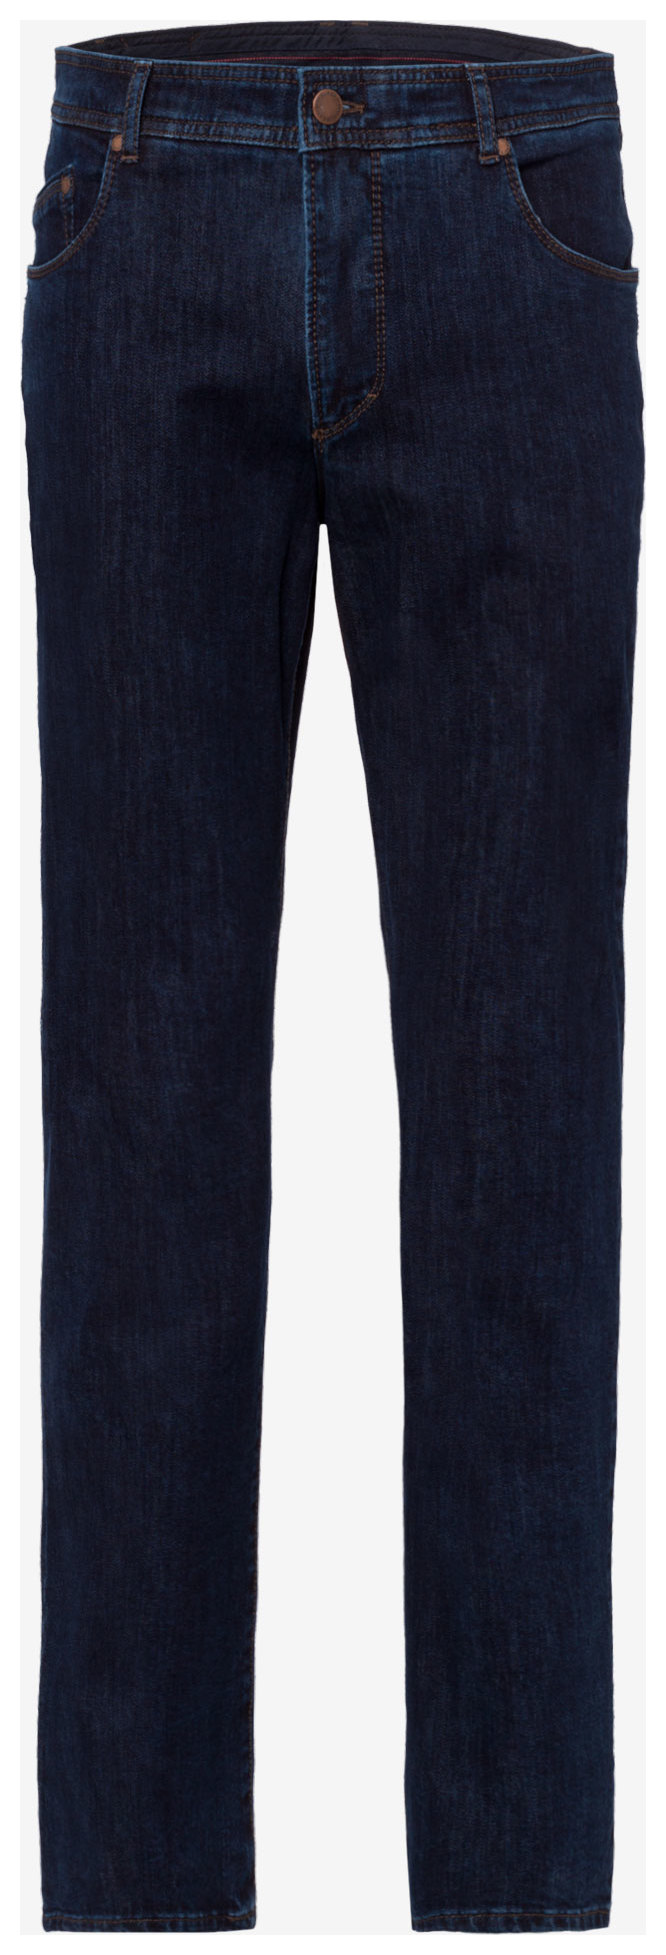 Brax Ken 340 Jeans Stone Jan Fashion Blue | Rozing Men\'s